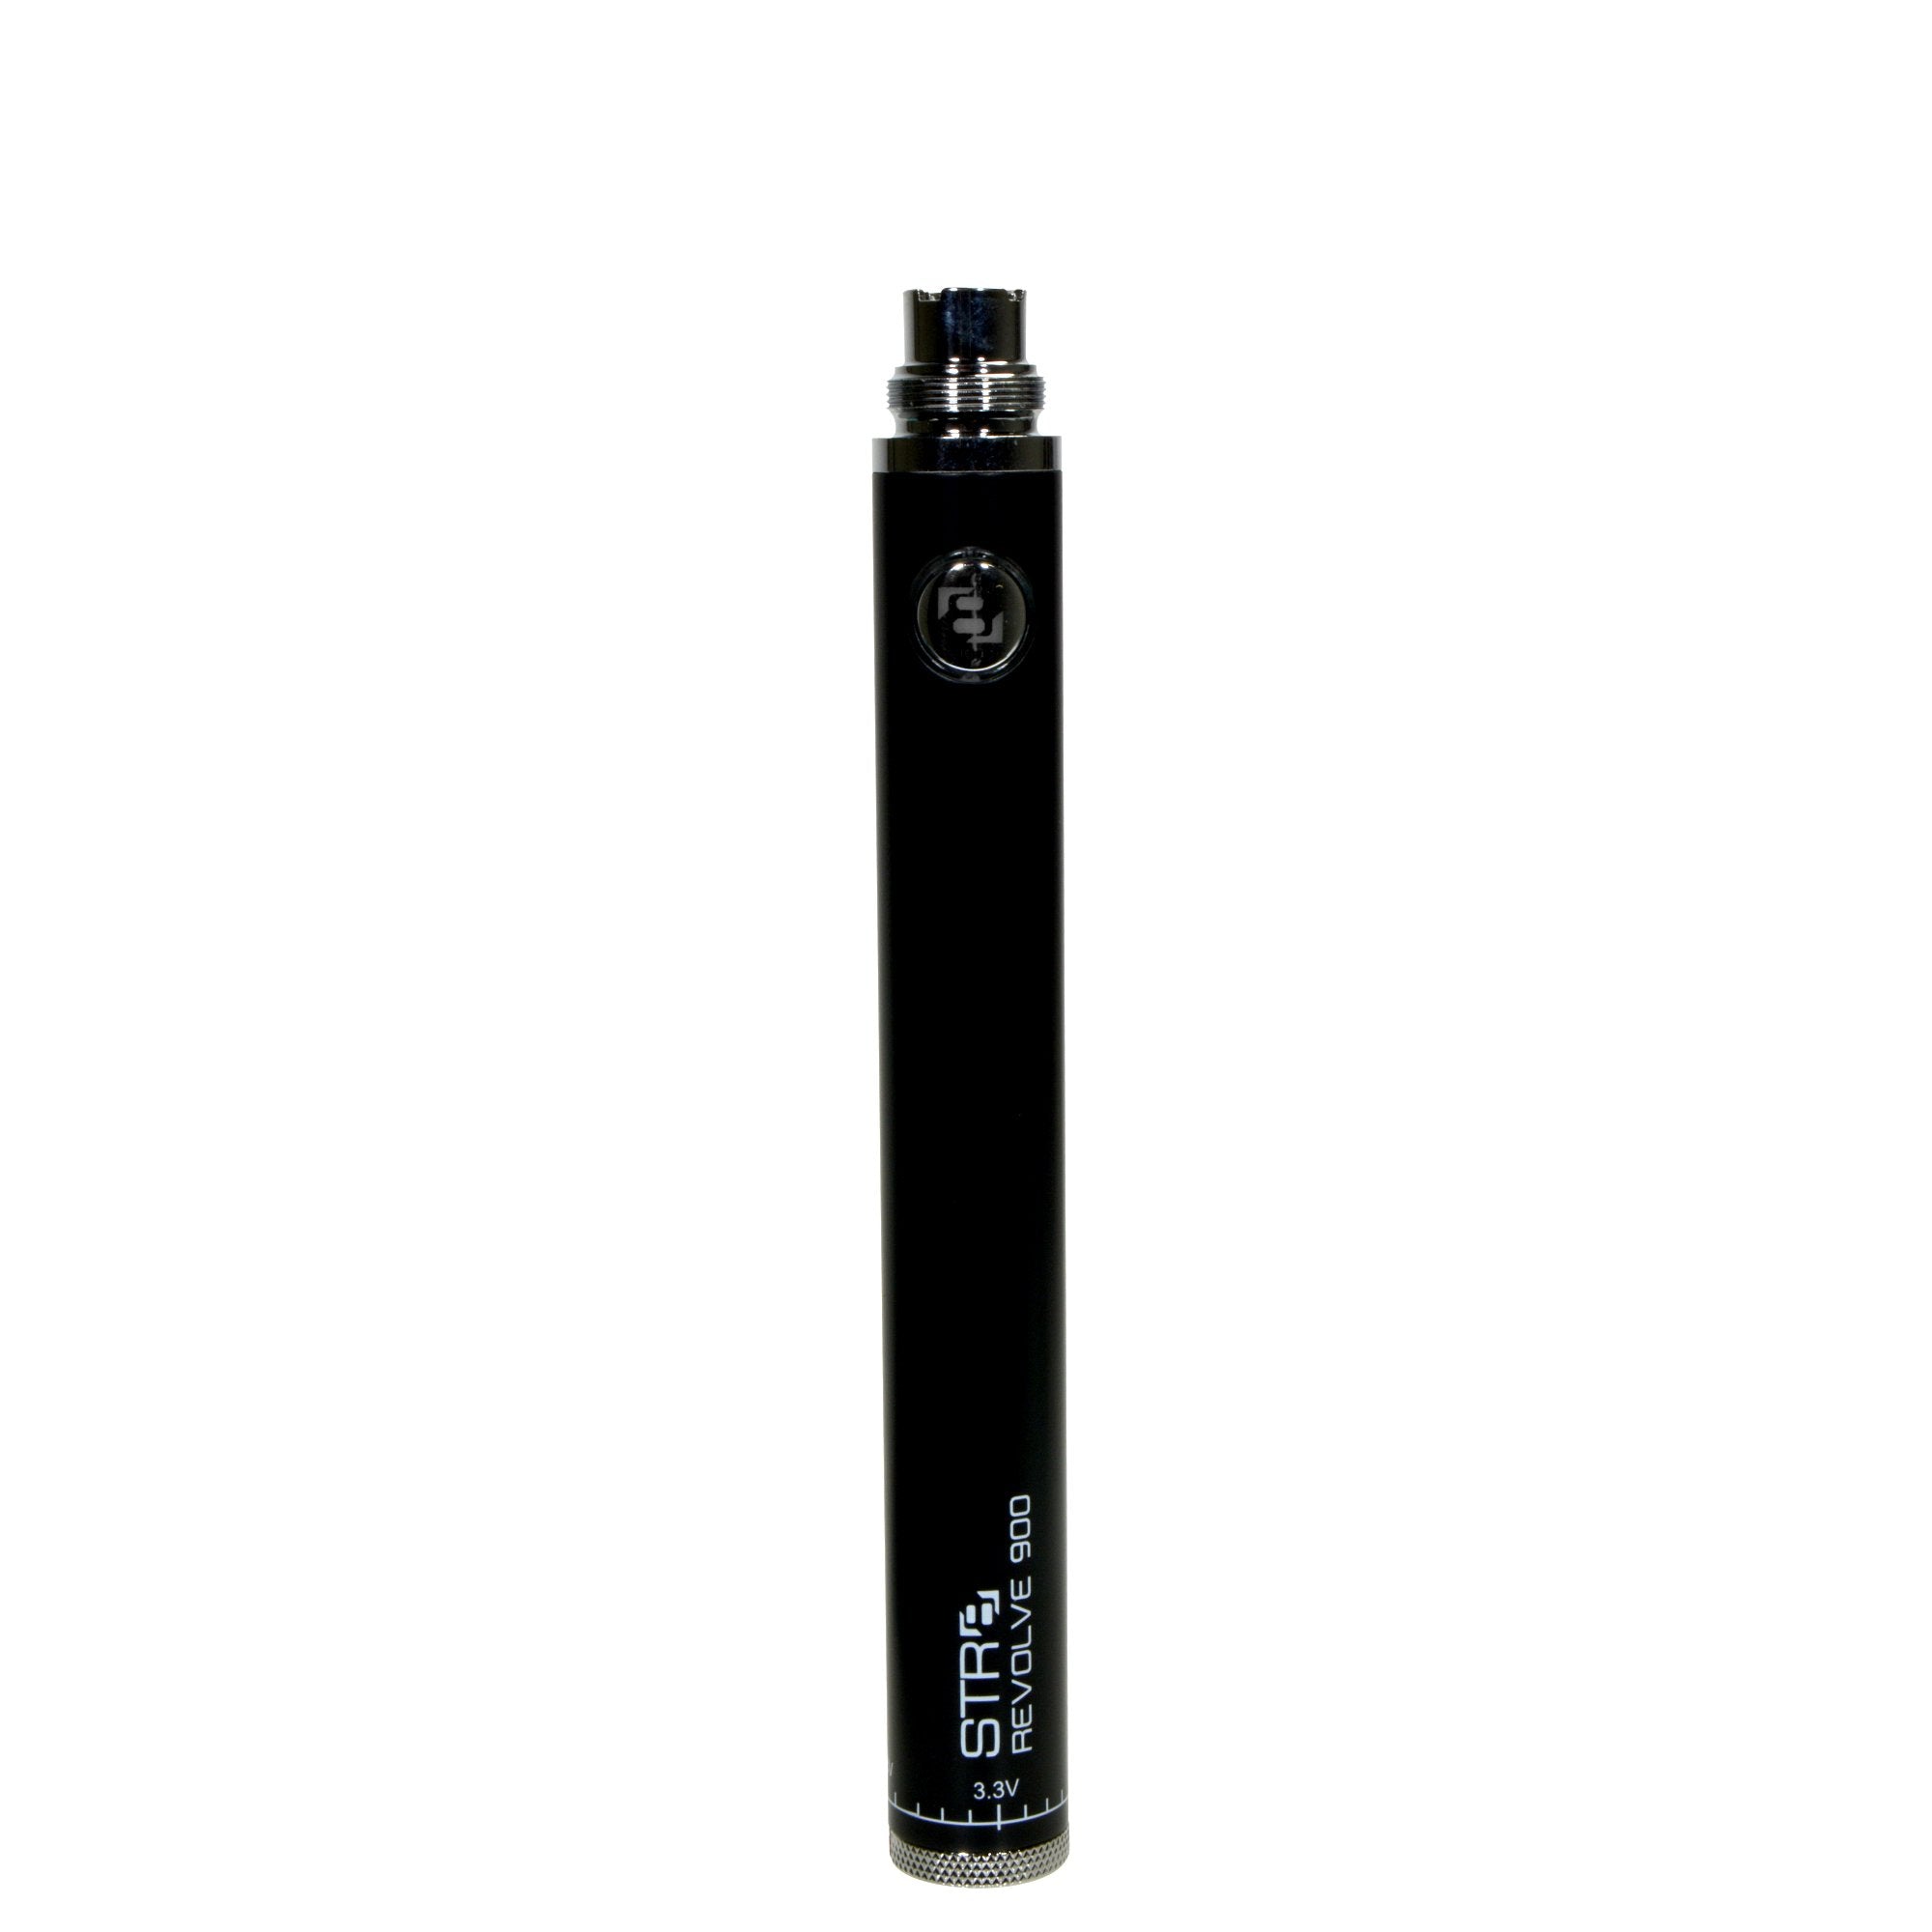 STR8 | Revolve Evod Vape Battery | 900mAh - Black - 5 Count - 4